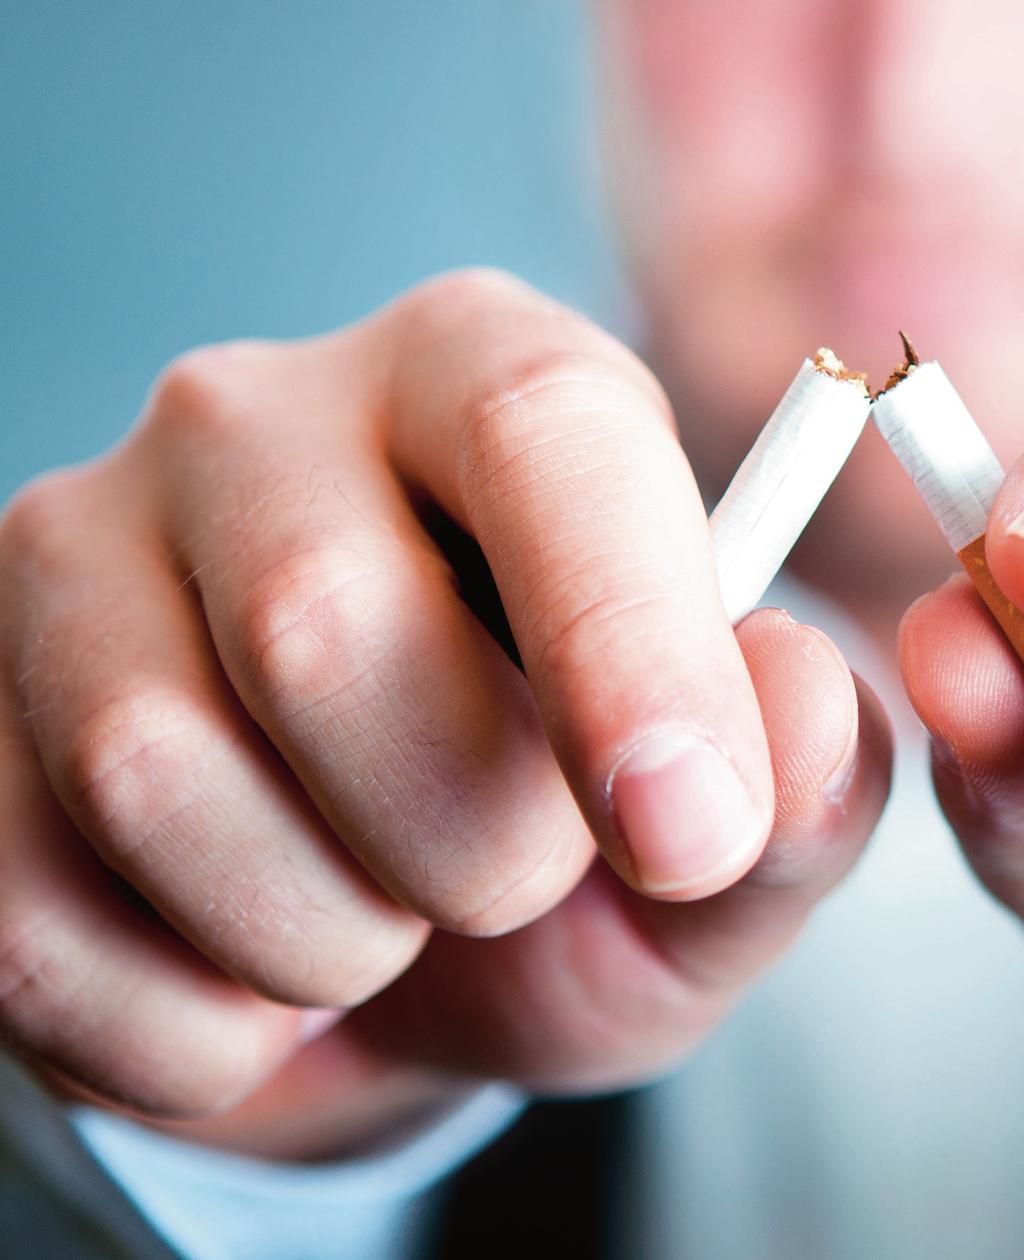 Verlust und Gewinn Sie möchten das Rauchen aufhören oder Ihr Arzt hat Ihnen dringend empfohlen, nicht mehr zu rauchen? Was sind Ihre Gedanken dabei? Was würden Sie verlieren bzw.